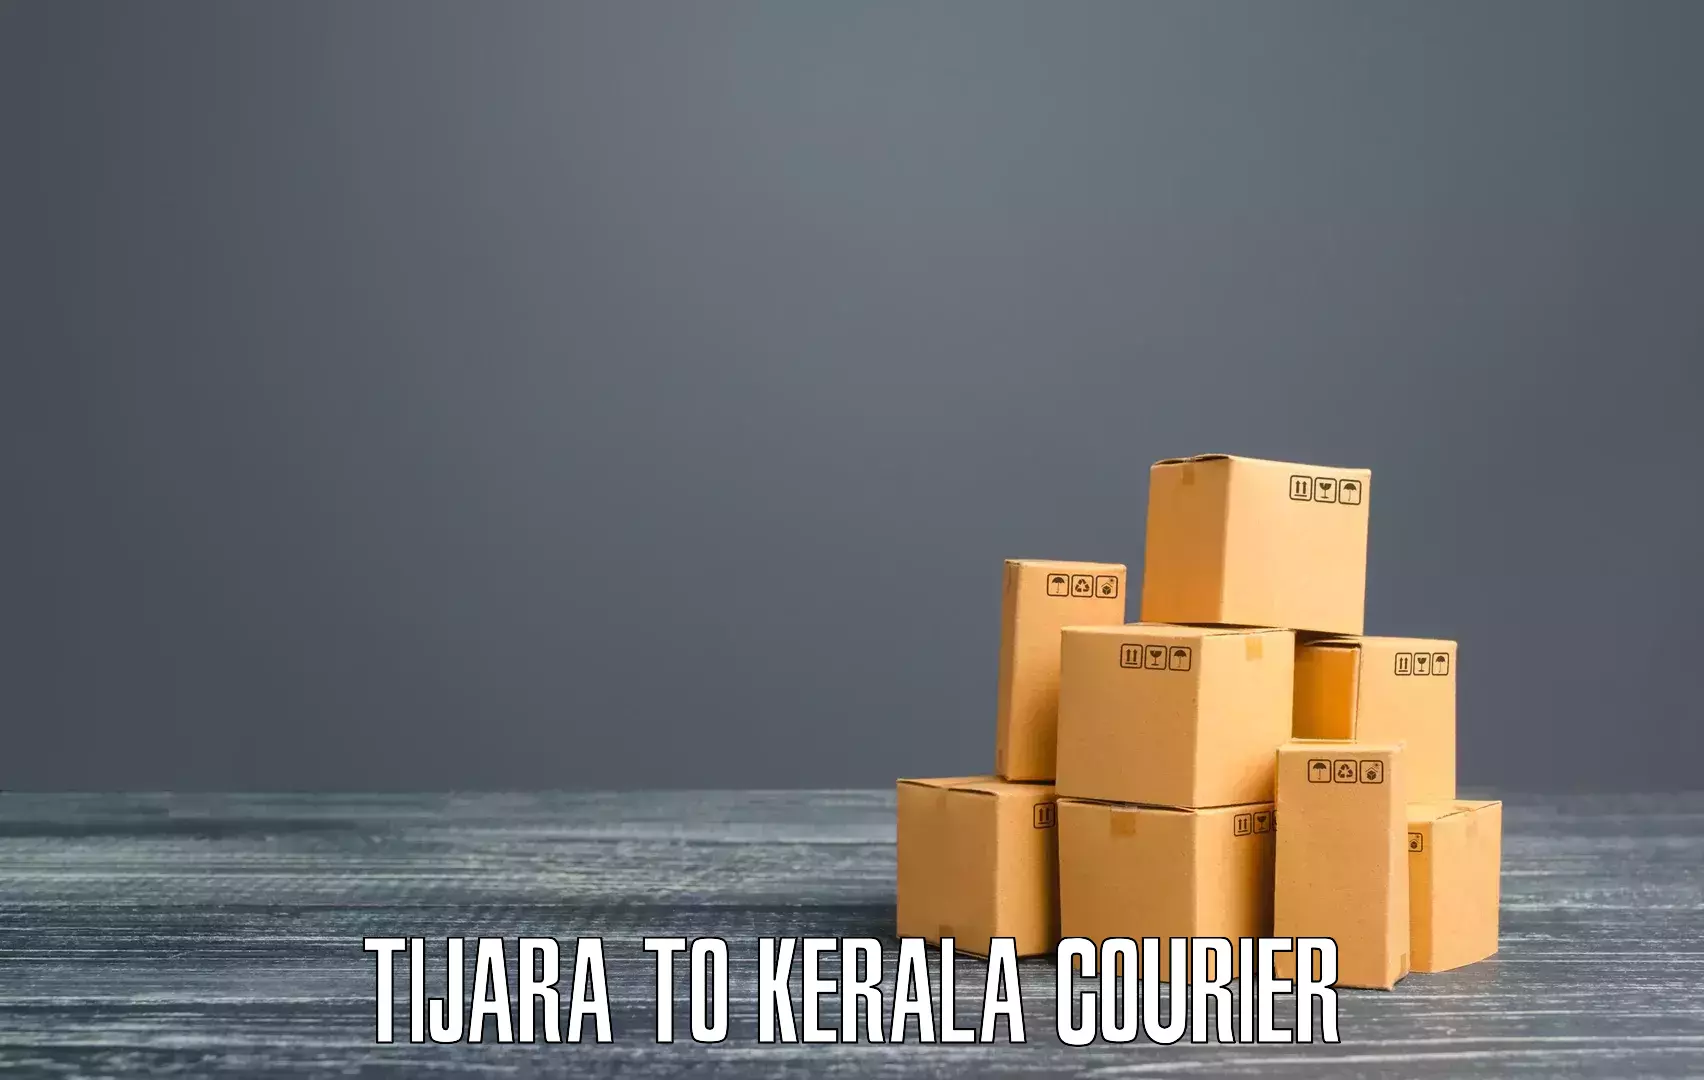 Express shipping in Tijara to Cochin